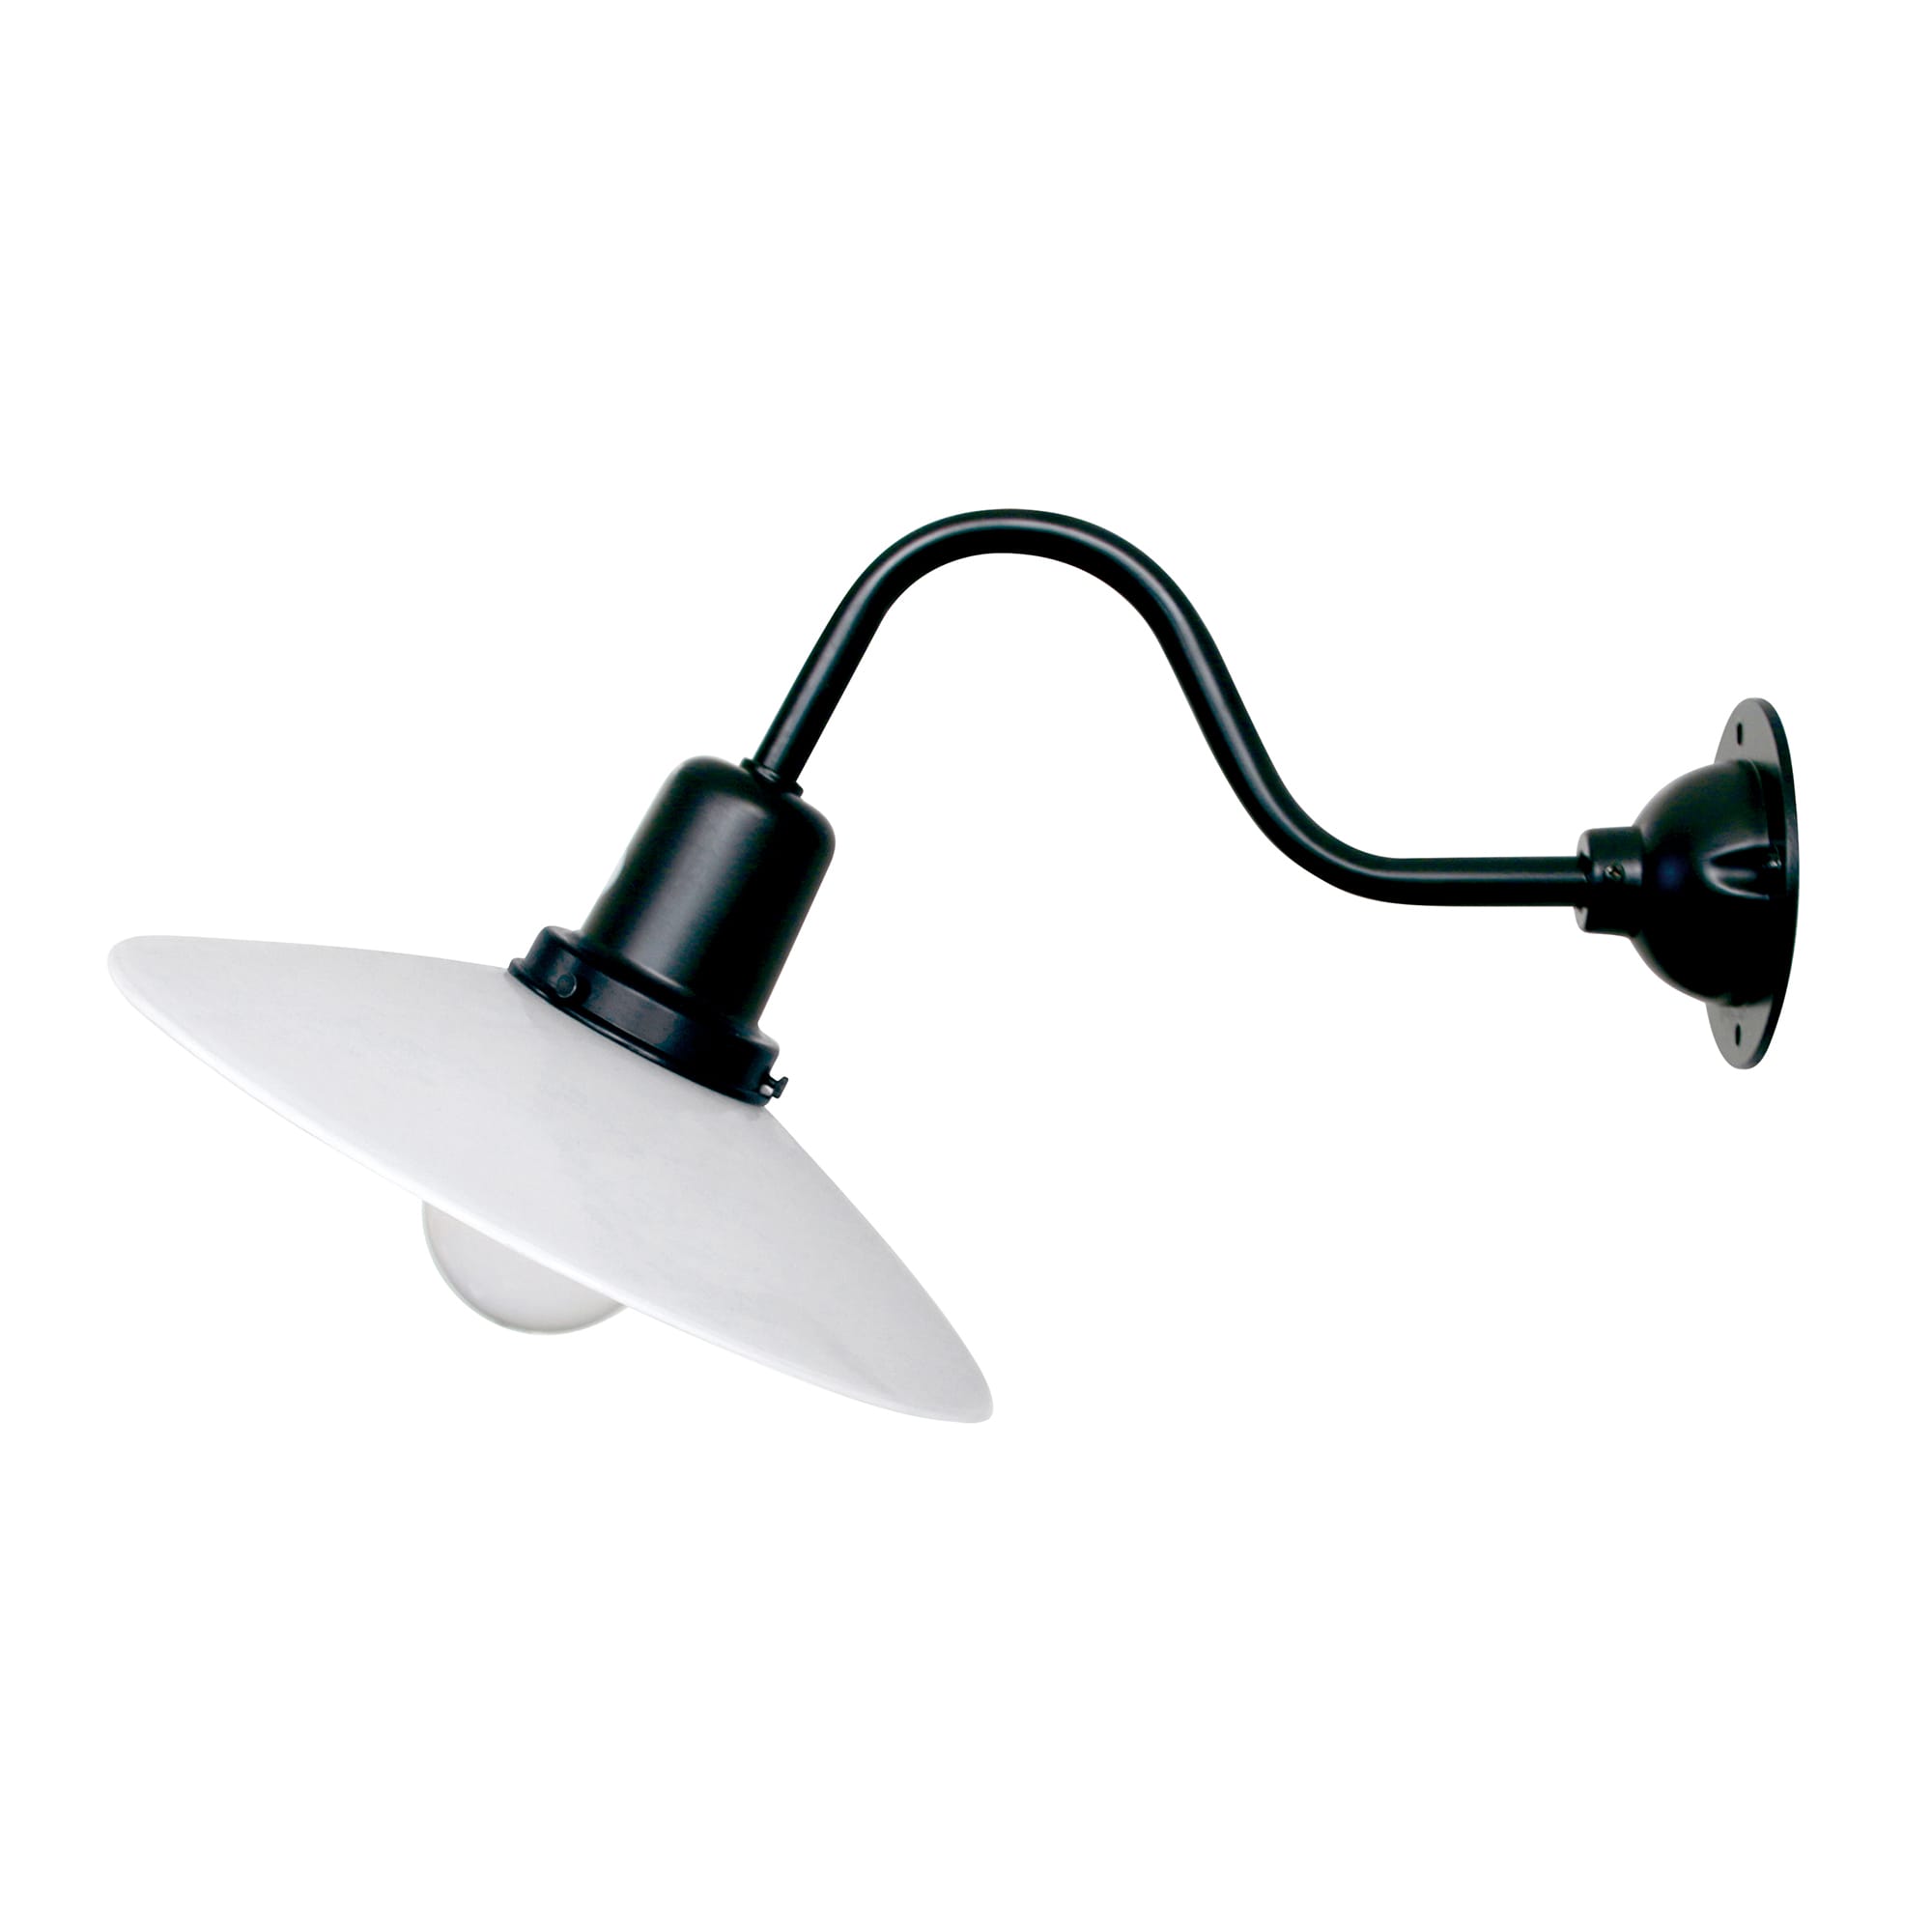 レトロブラケットライト 斜めアーム 乳白×ブラック | LT-BR003-03-G141 | 直付・ブラケット照明 | 照明・スイッチ | toolbox